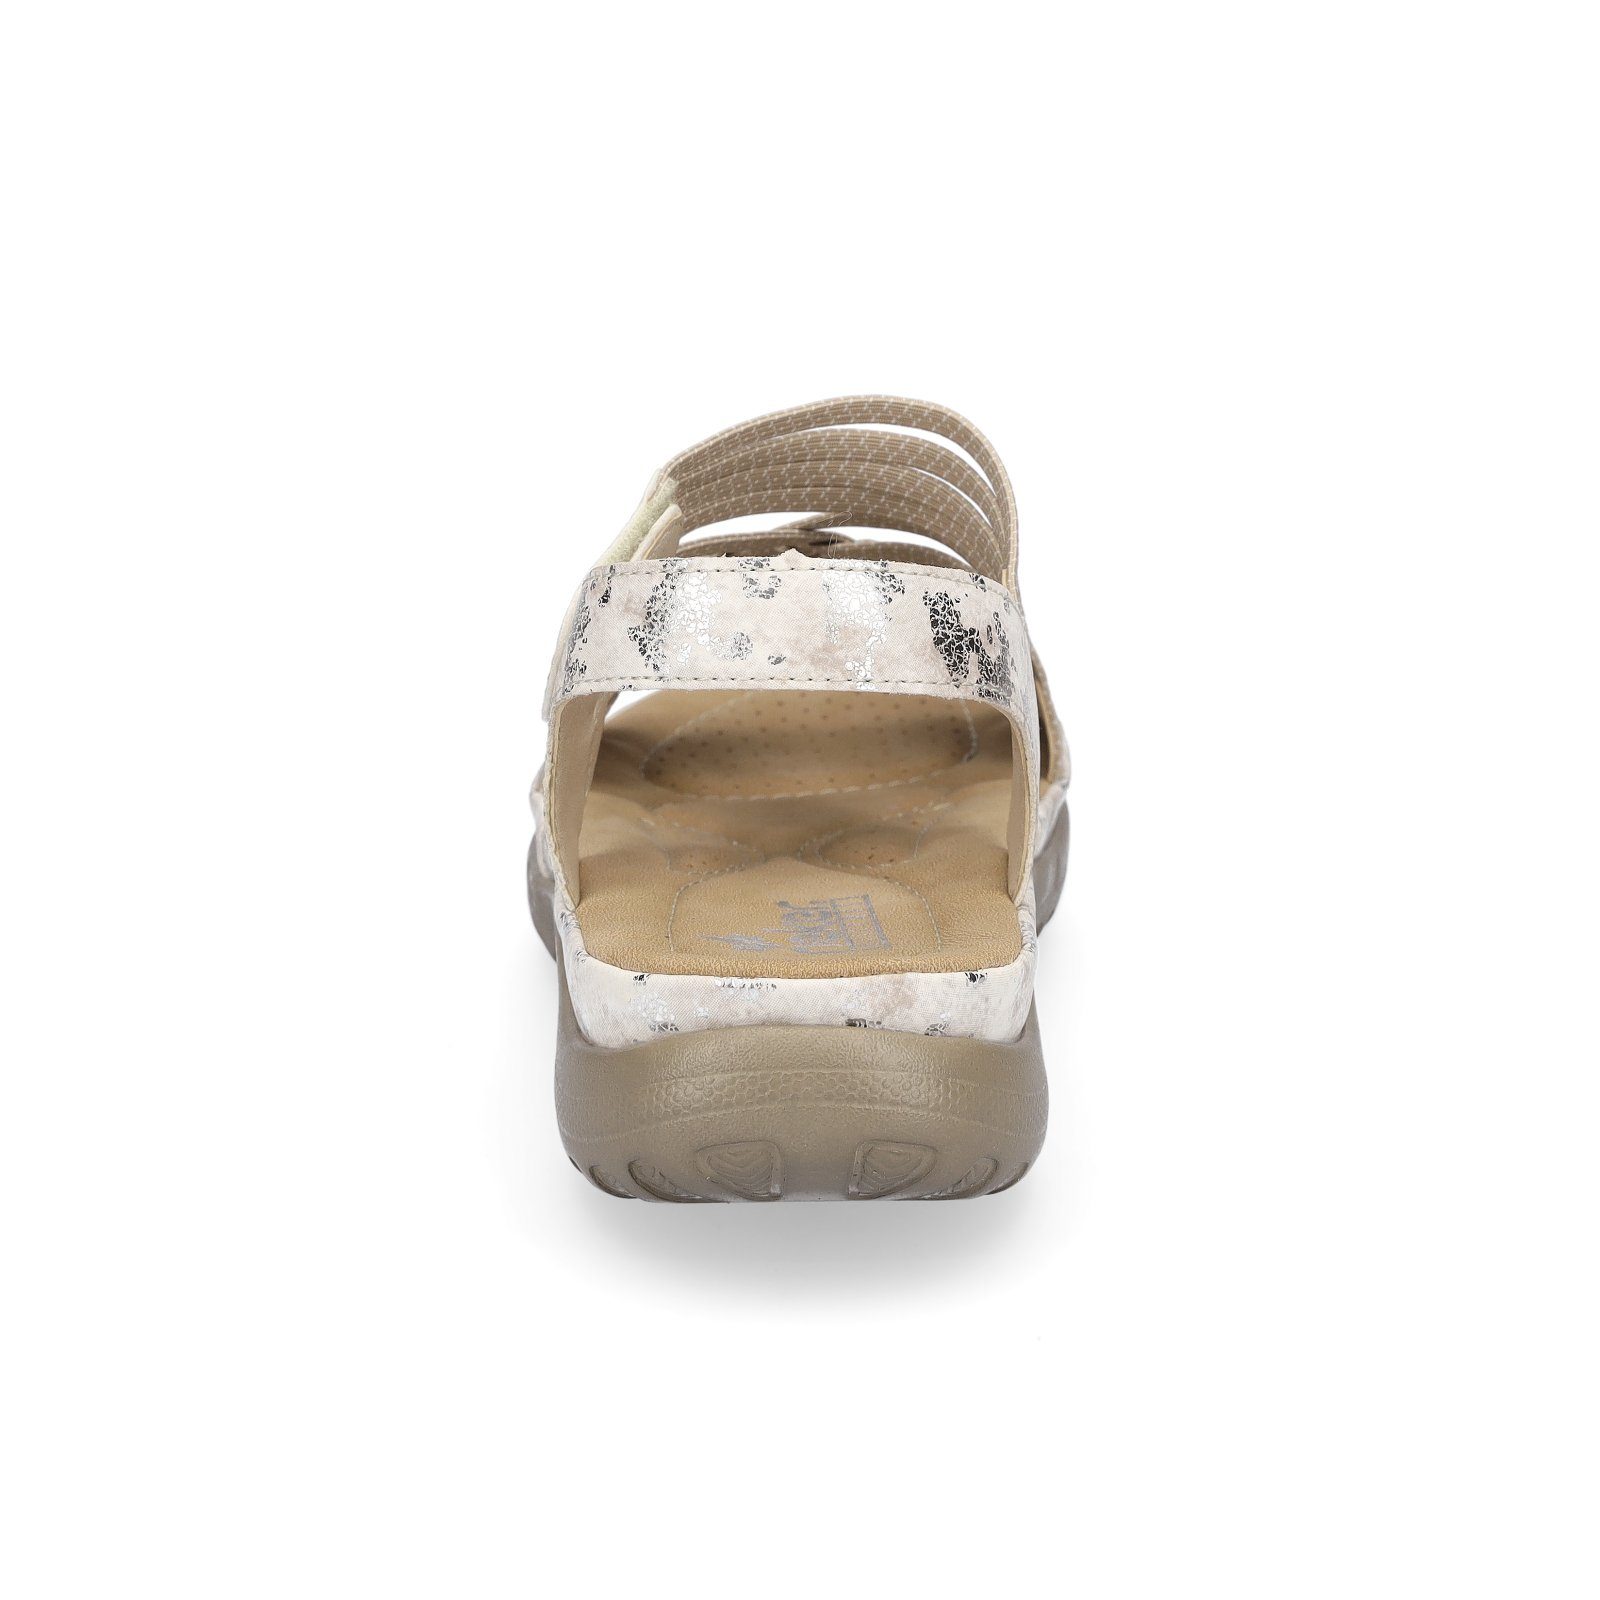 Rieker Rieker beige metallic Sandale Sandale Trekking Damen